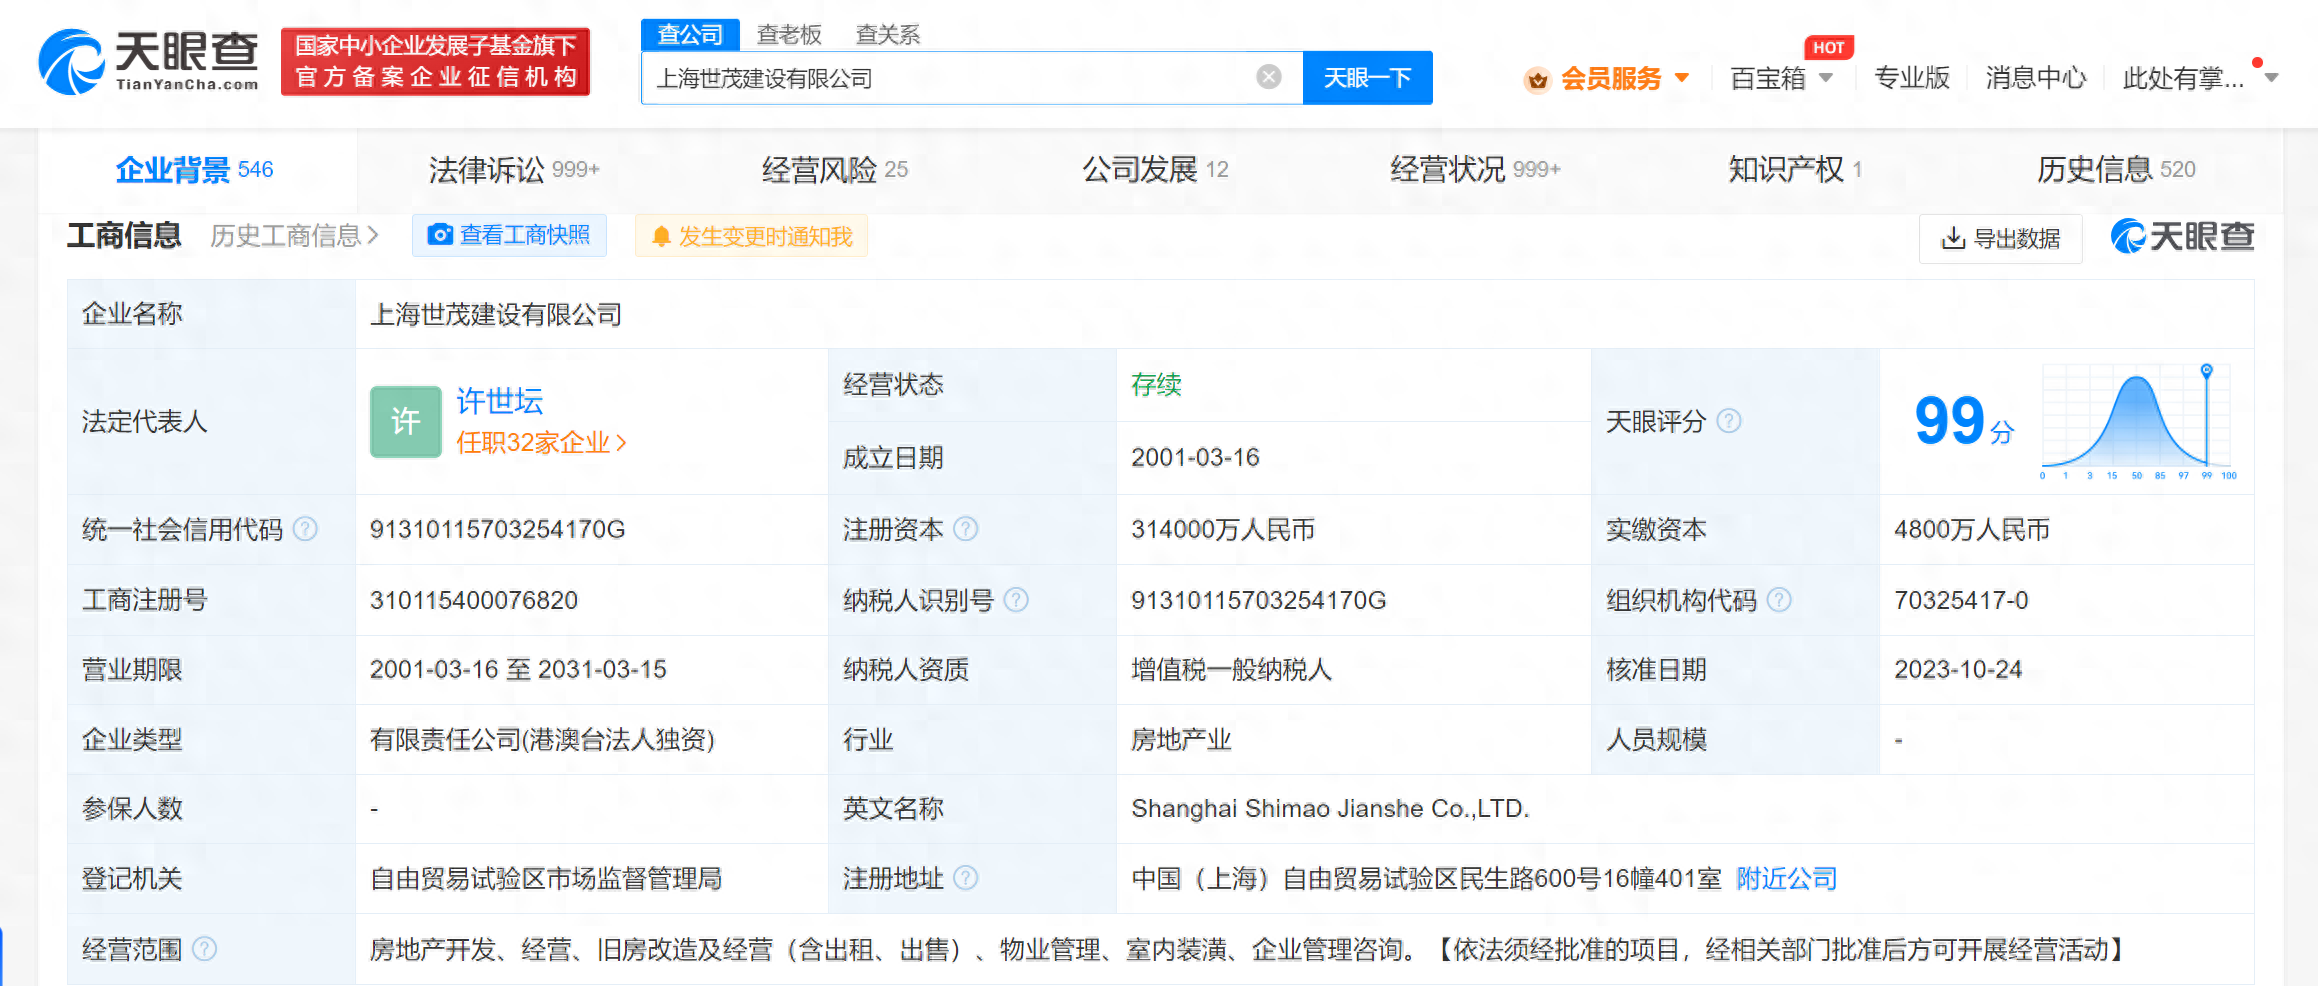 世茂集团及上海公司新增一条被执行人信息 执行标的7亿